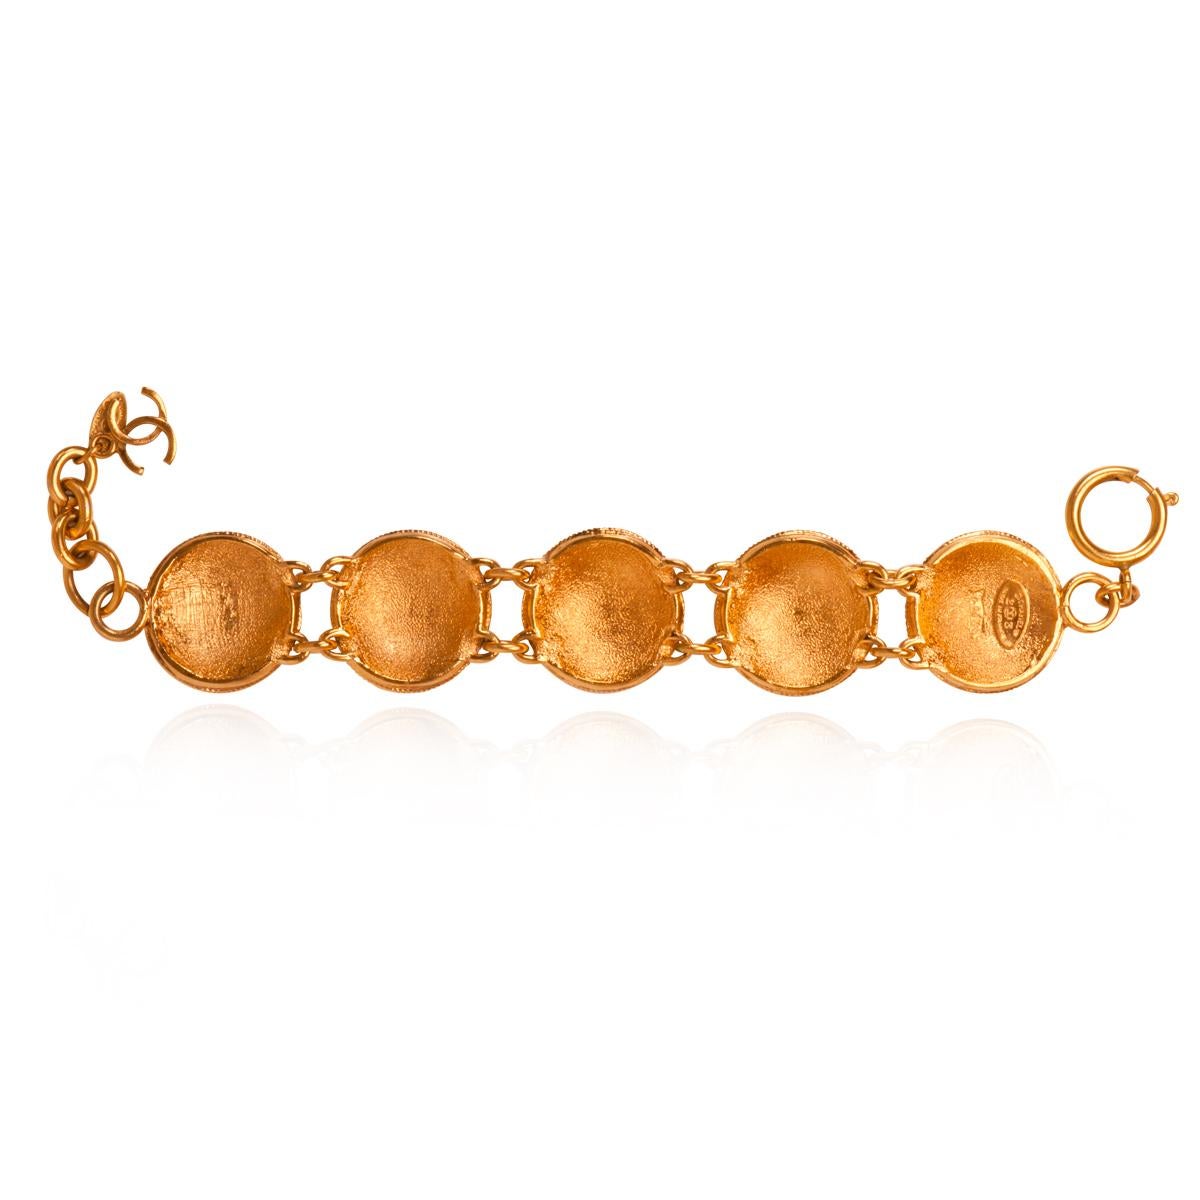 Bracelet chaîne médaillon vintage Chanel en métal doré, fabriqué en France, années 1990.
Le bracelet est estampillé.

Origine : France
Taille : 24,0 cm
Condit : En très bon état avec peu d'éraflures.

Nous garantissons l'authenticité et la qualité